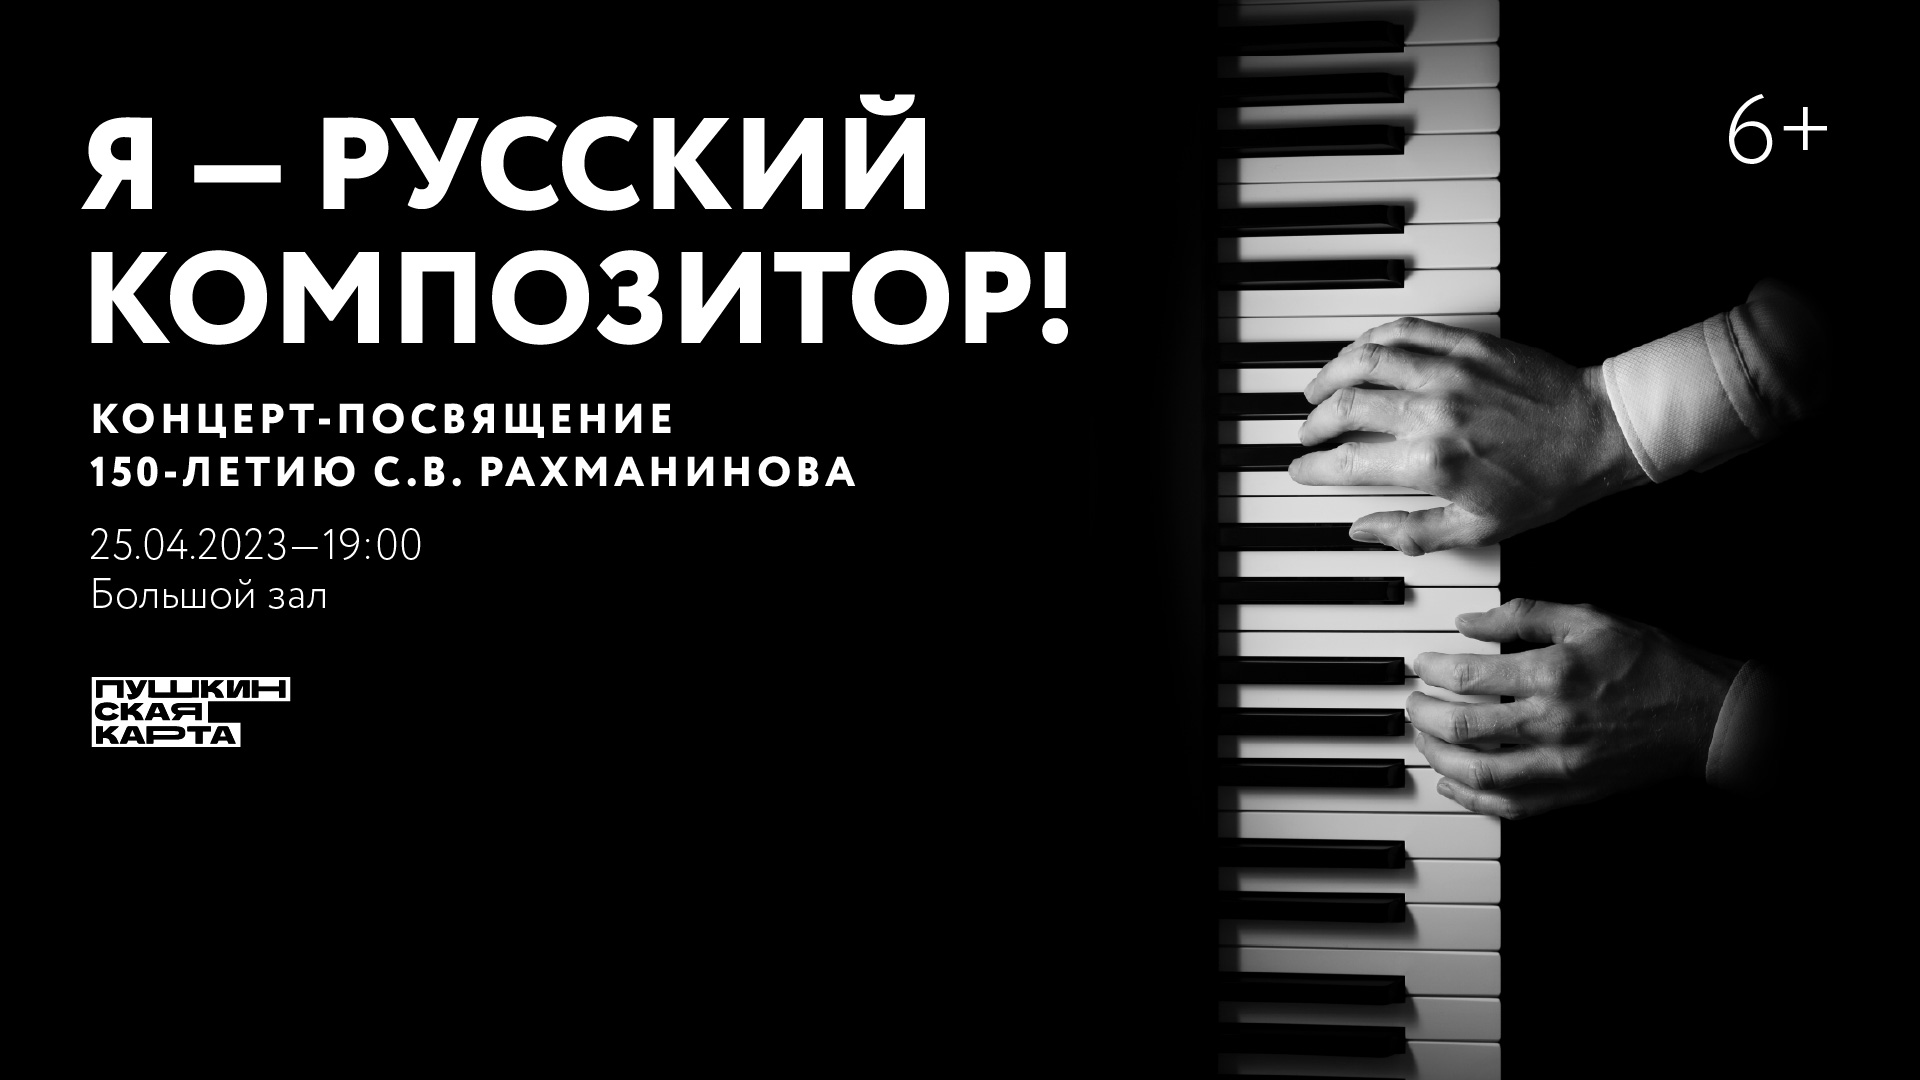 «Я — русский композитор!». Концерт-посвящение 150-летию <br>С.В. Рахманинова